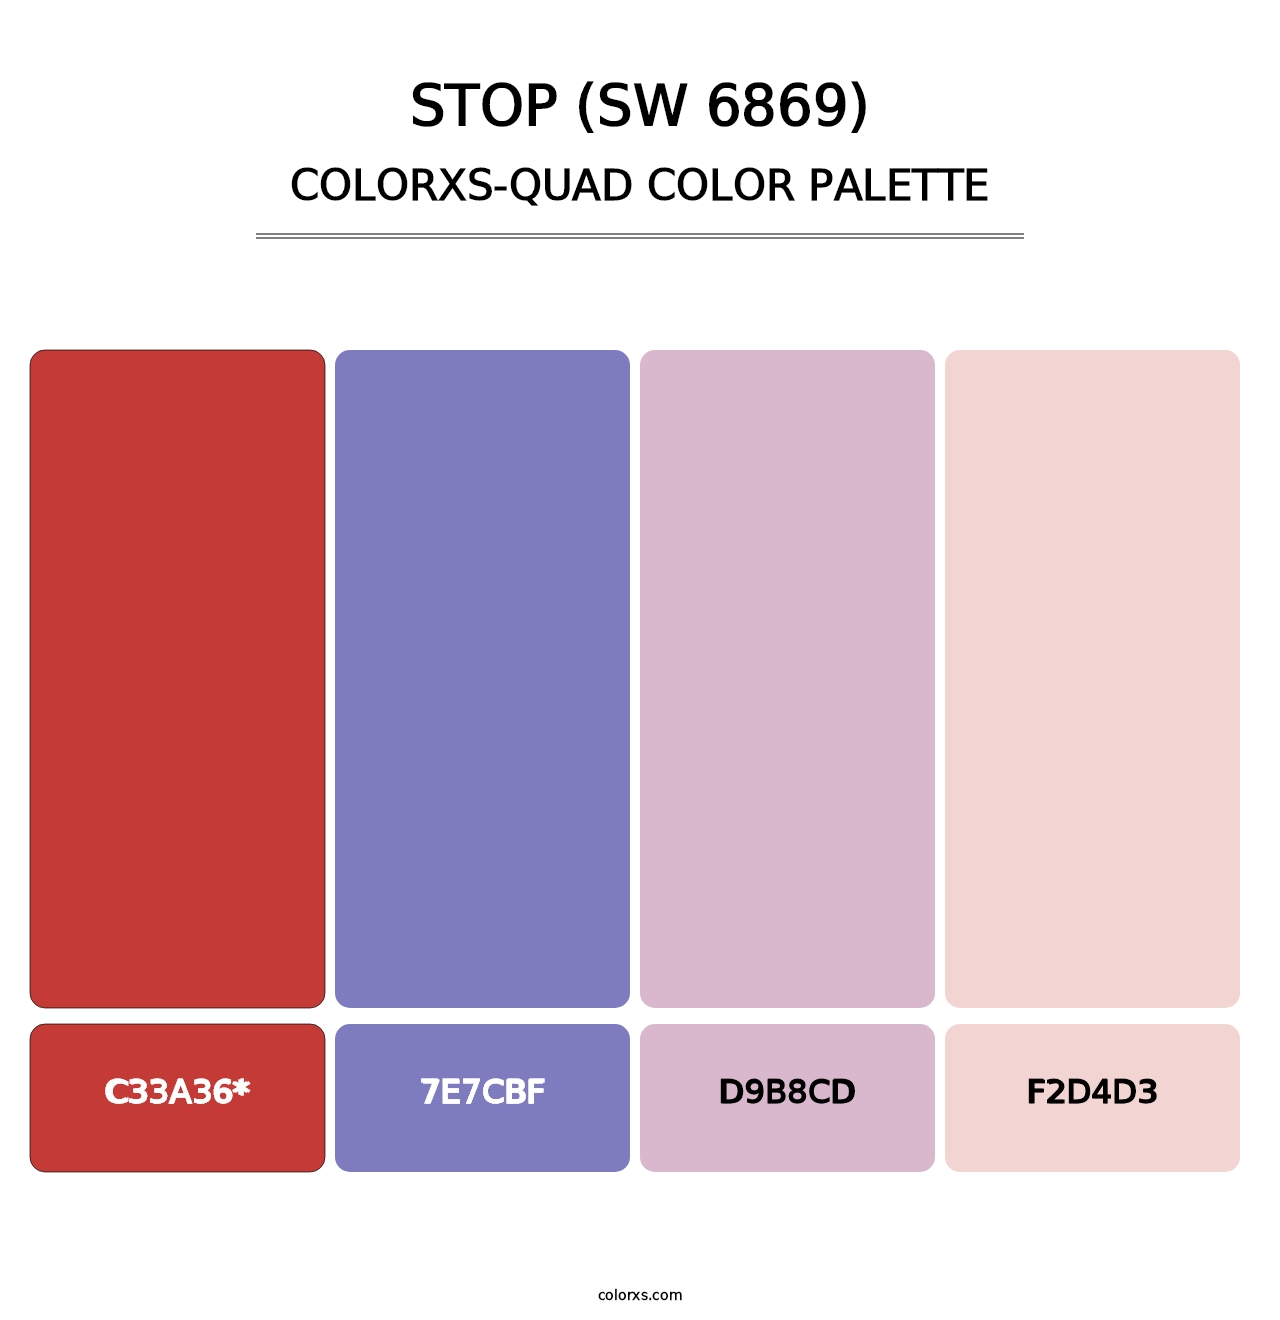 Stop (SW 6869) - Colorxs Quad Palette